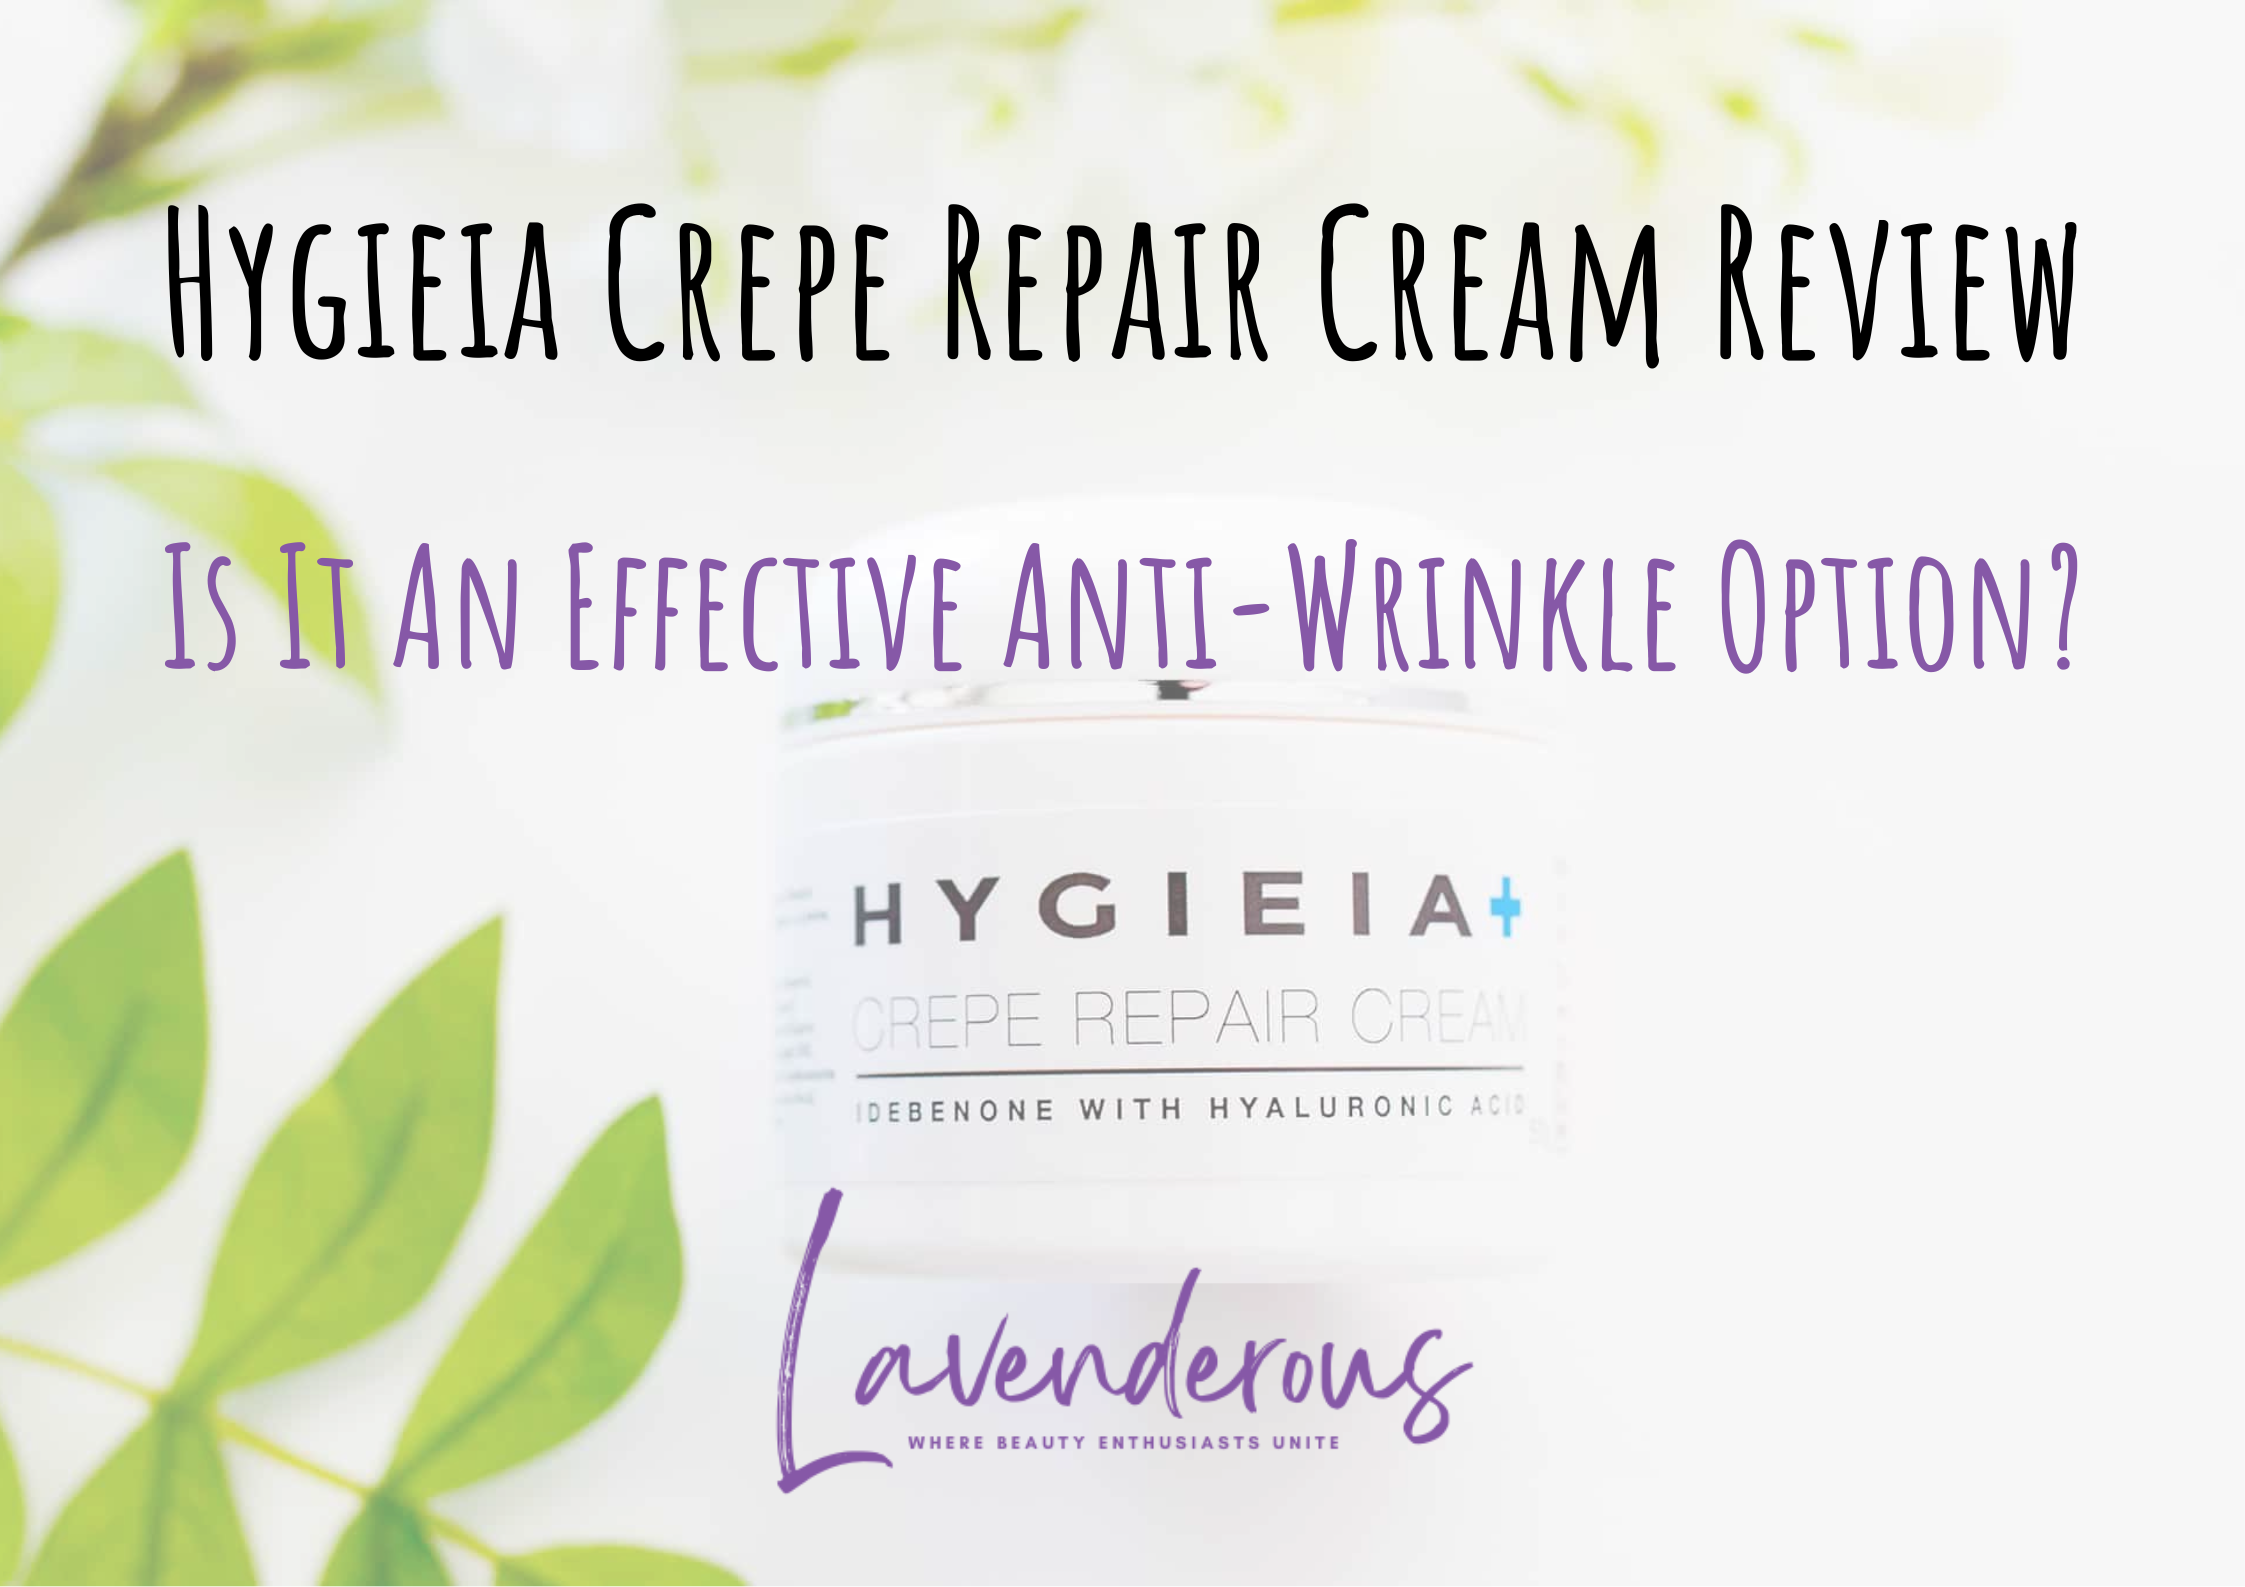 Hygieia Crepe Repair Cream Reviews